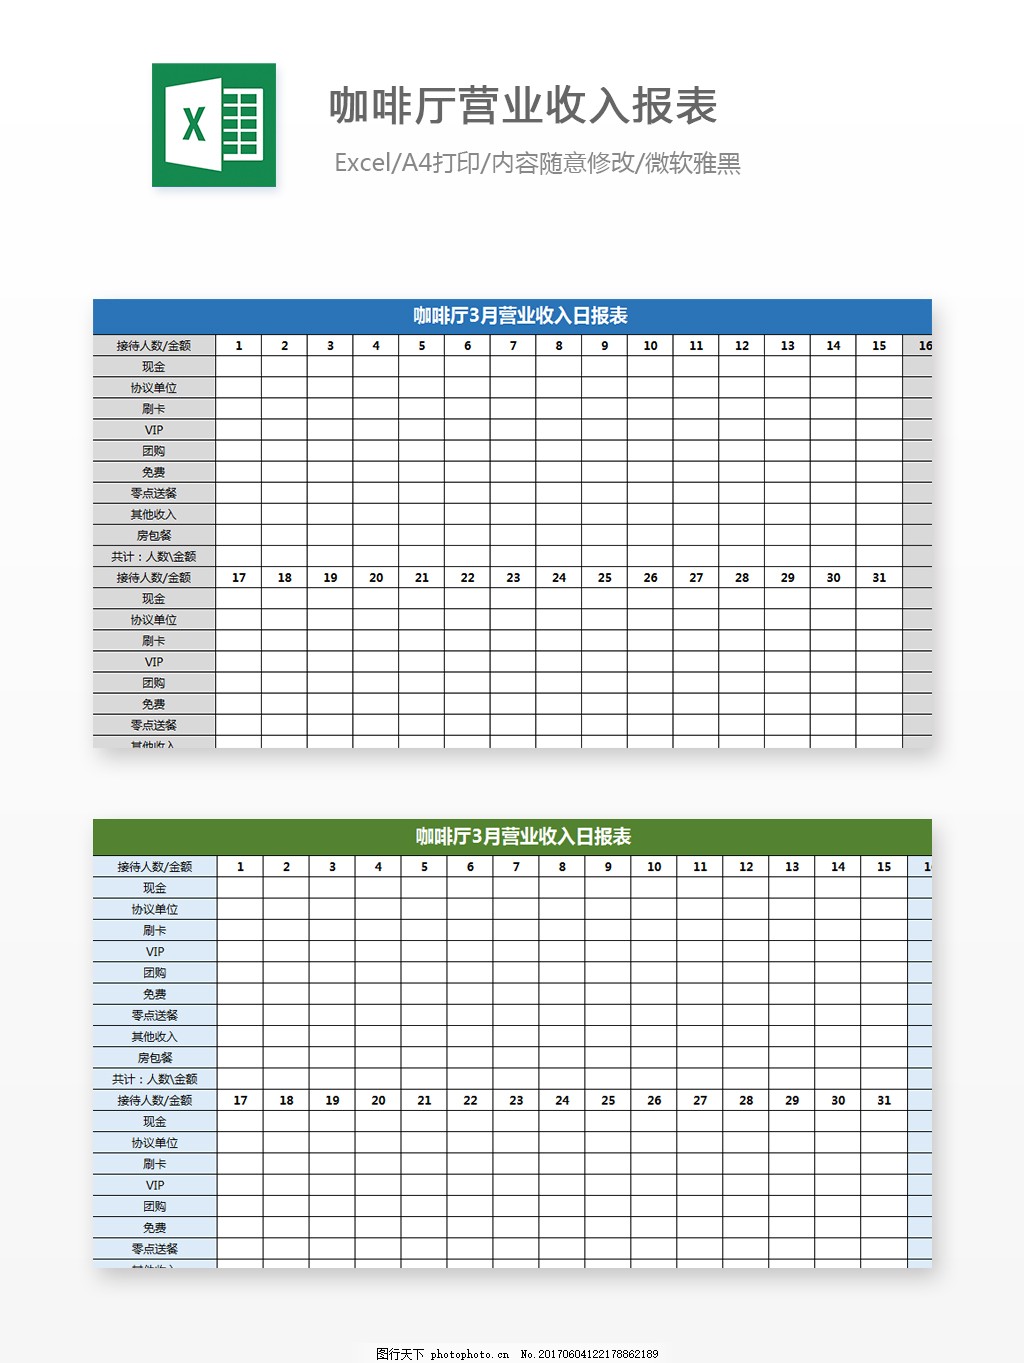 经营利润明细表Excel图表excel模板图片_费用报表_Excel模板_图行天下图库